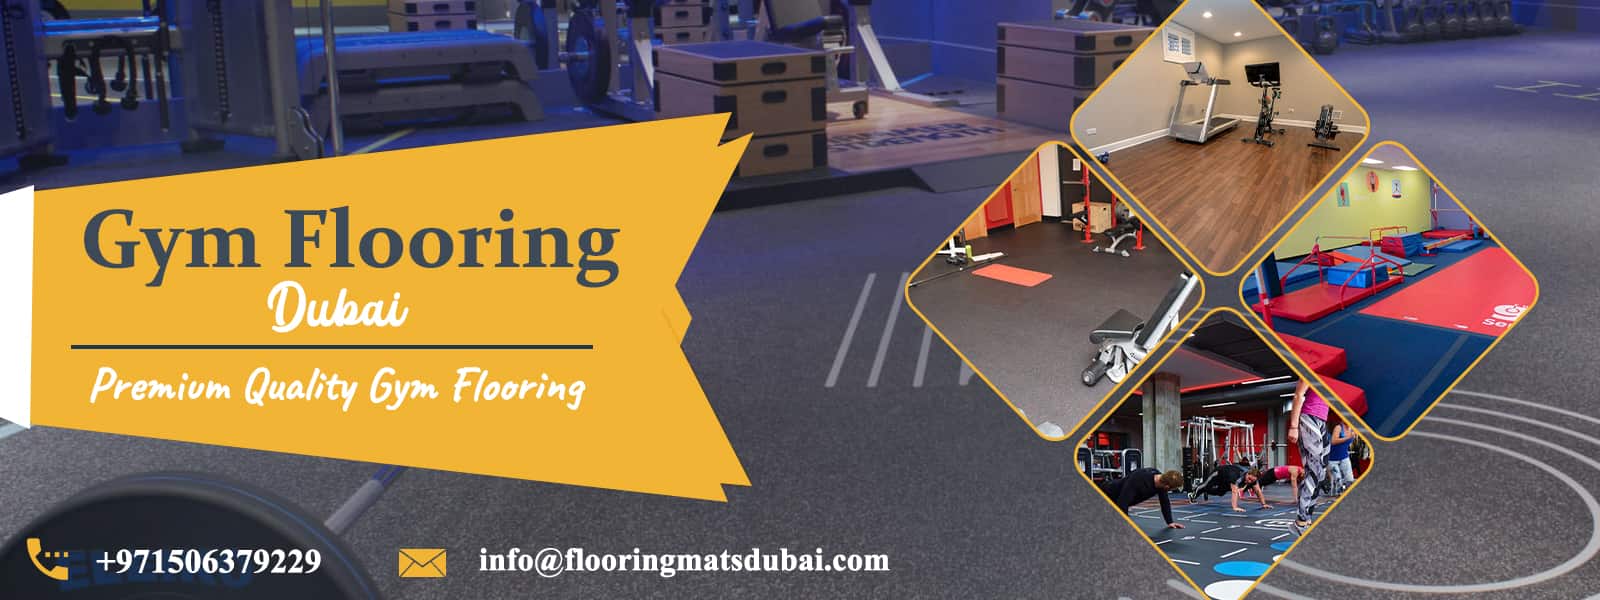 Gym-flooring-banner-1